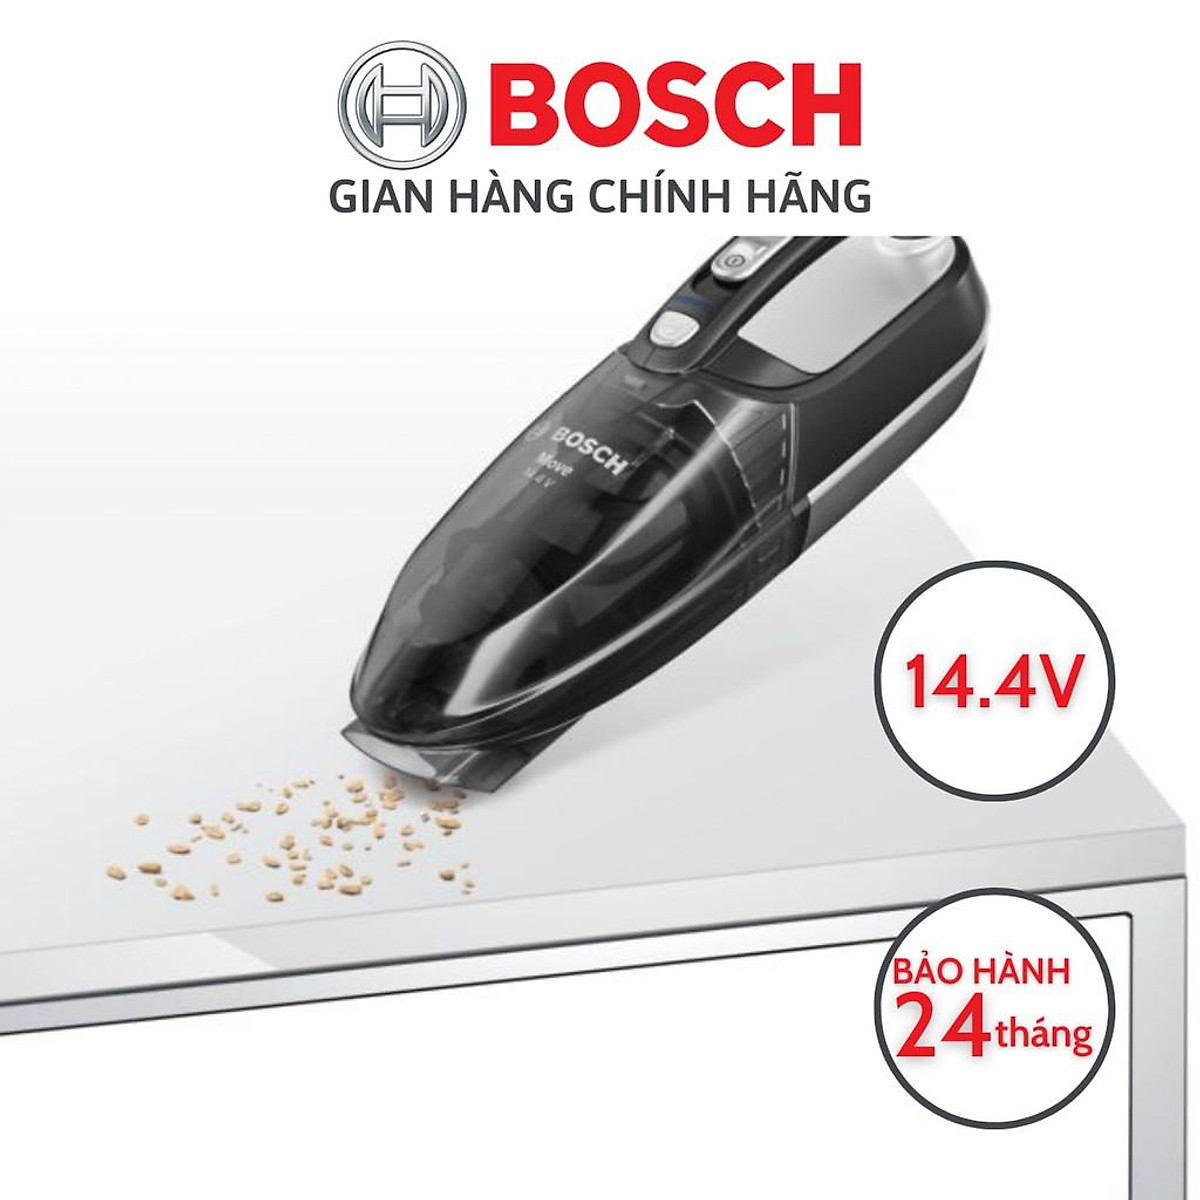 Máy hút bụi cầm tay sạc điện Bosch 14.4V (BHN14090) - Hàng chính hãng